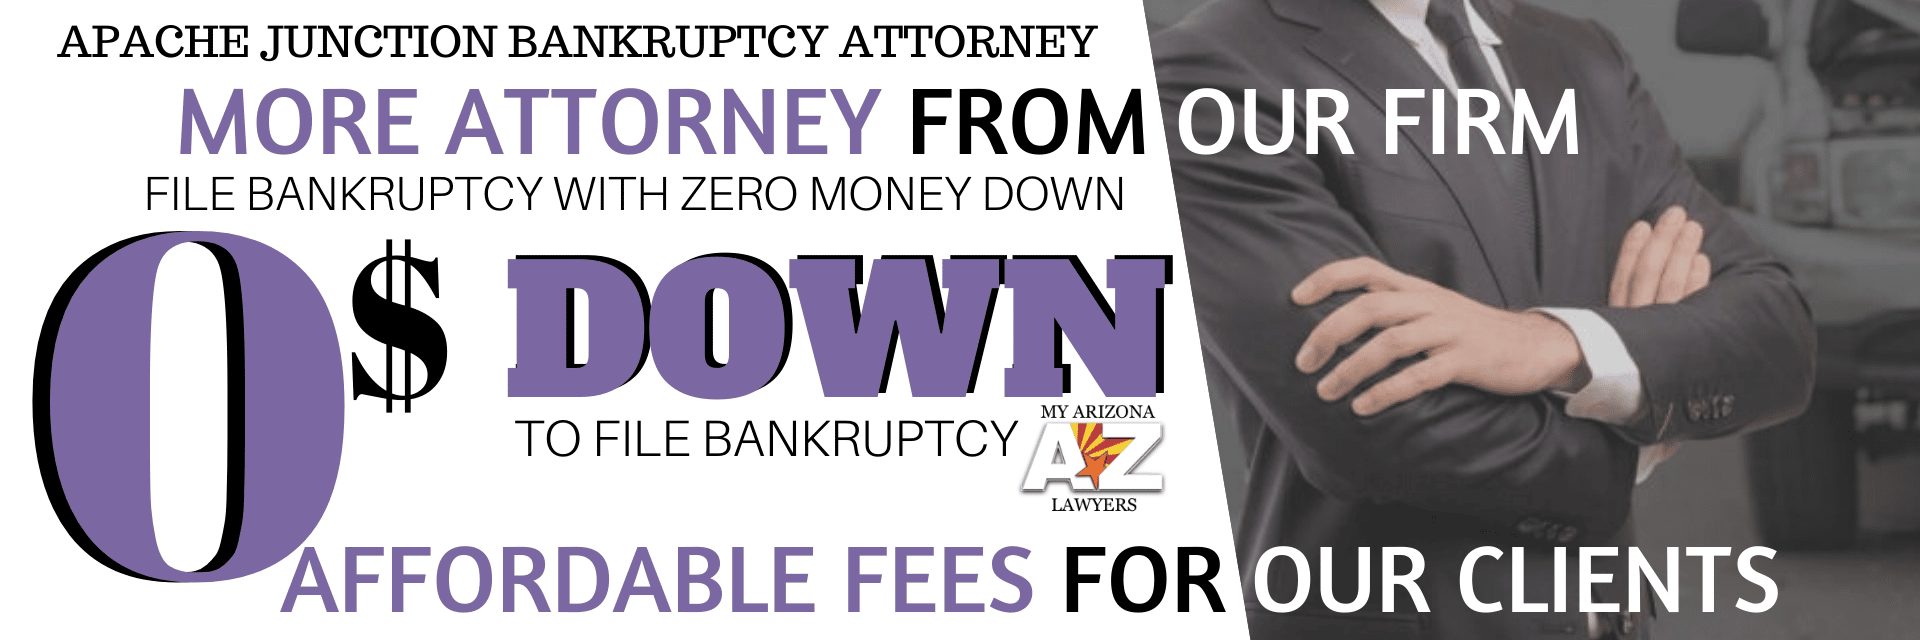 Zero money down bankruptcy infographic